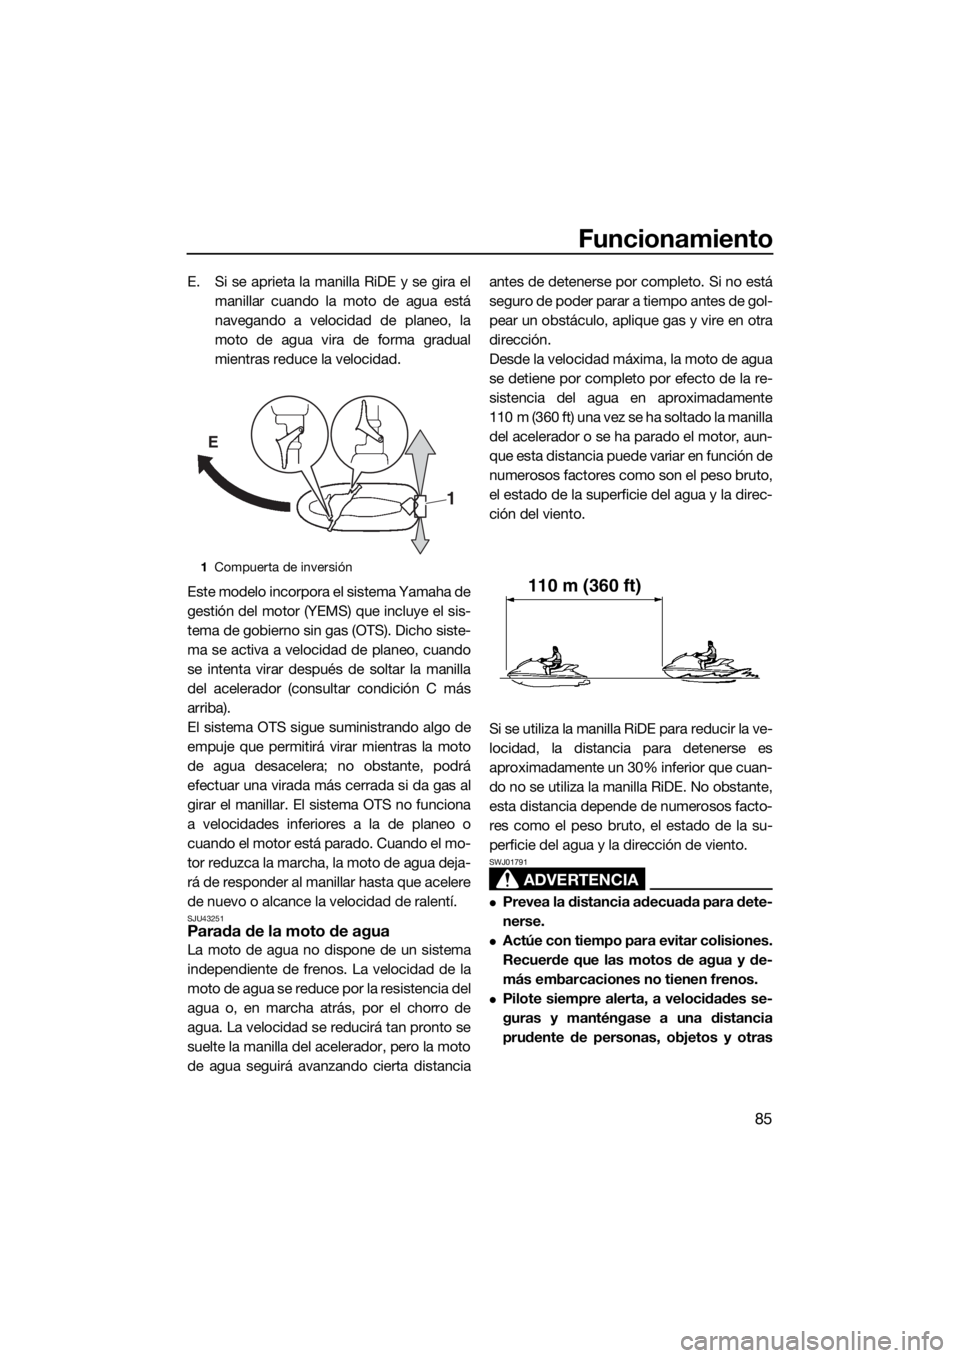 YAMAHA FX HO CRUISER 2017  Manuale de Empleo (in Spanish) Funcionamiento
85
E. Si se aprieta la manilla RiDE y se gira el
manillar cuando la moto de agua está
navegando a velocidad de planeo, la
moto de agua vira de forma gradual
mientras reduce la velocida